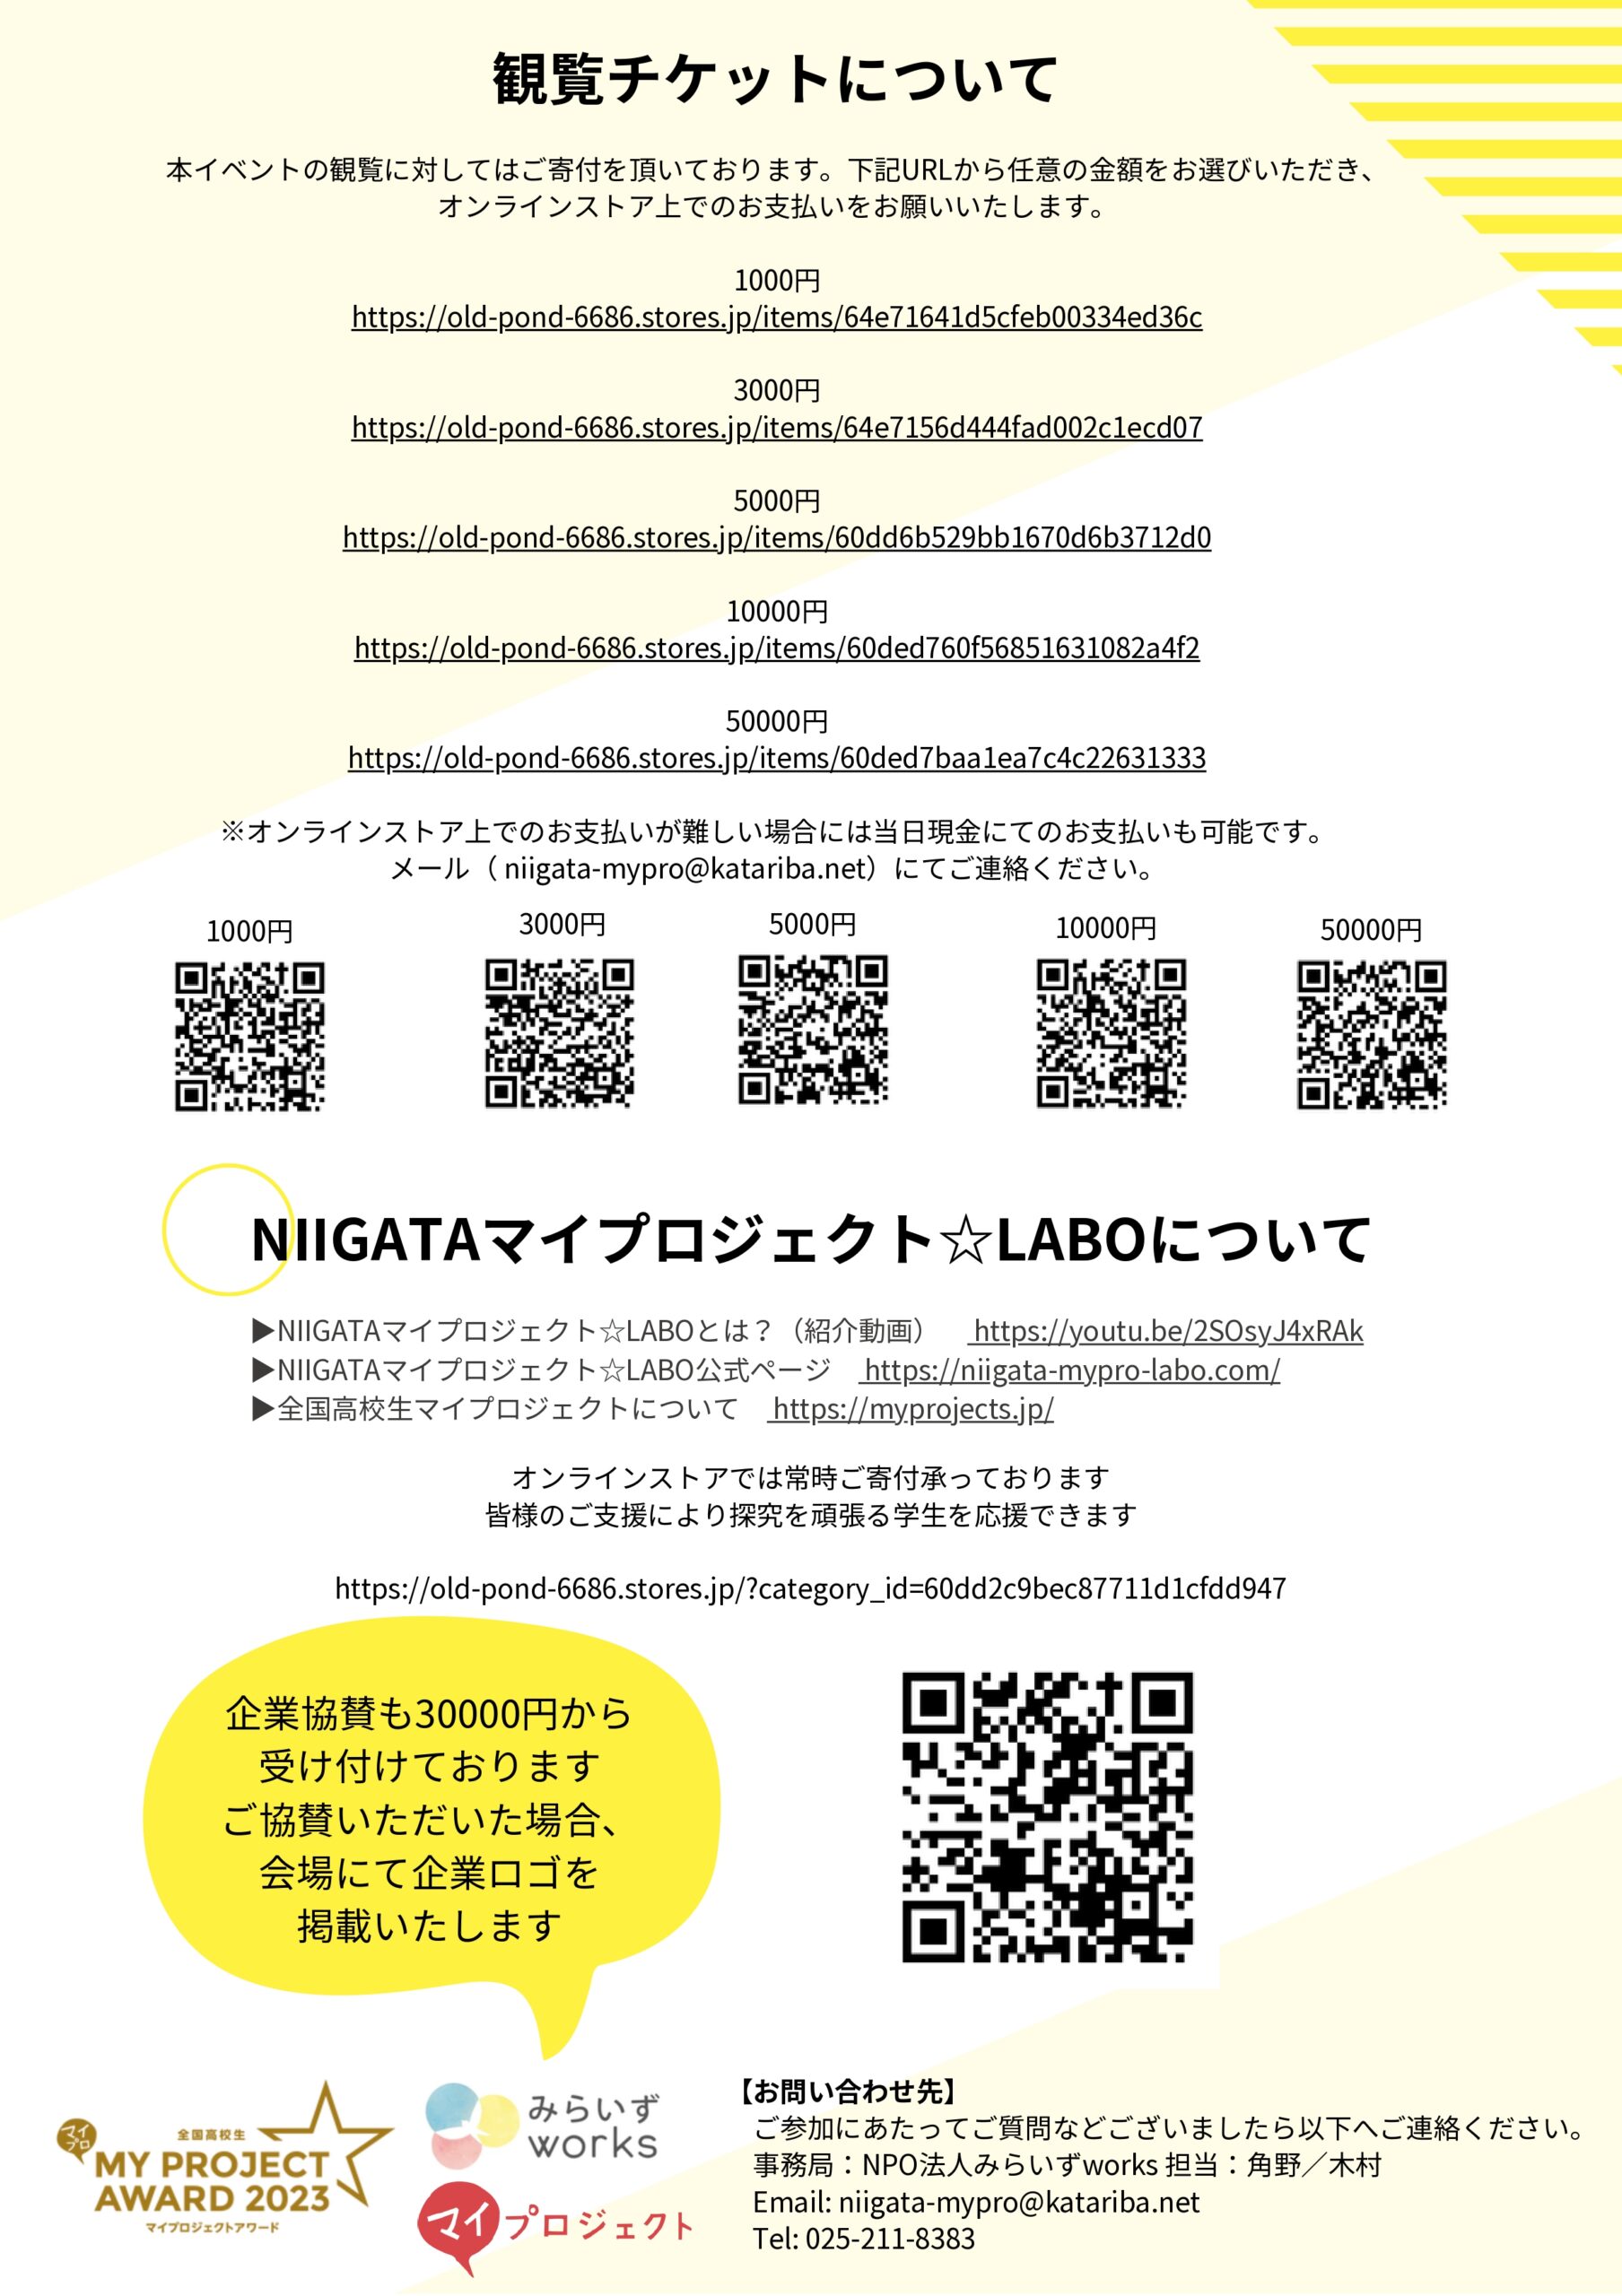 NIIGATAマイプロジェクト☆LABO　新潟県Summit（2023冬）